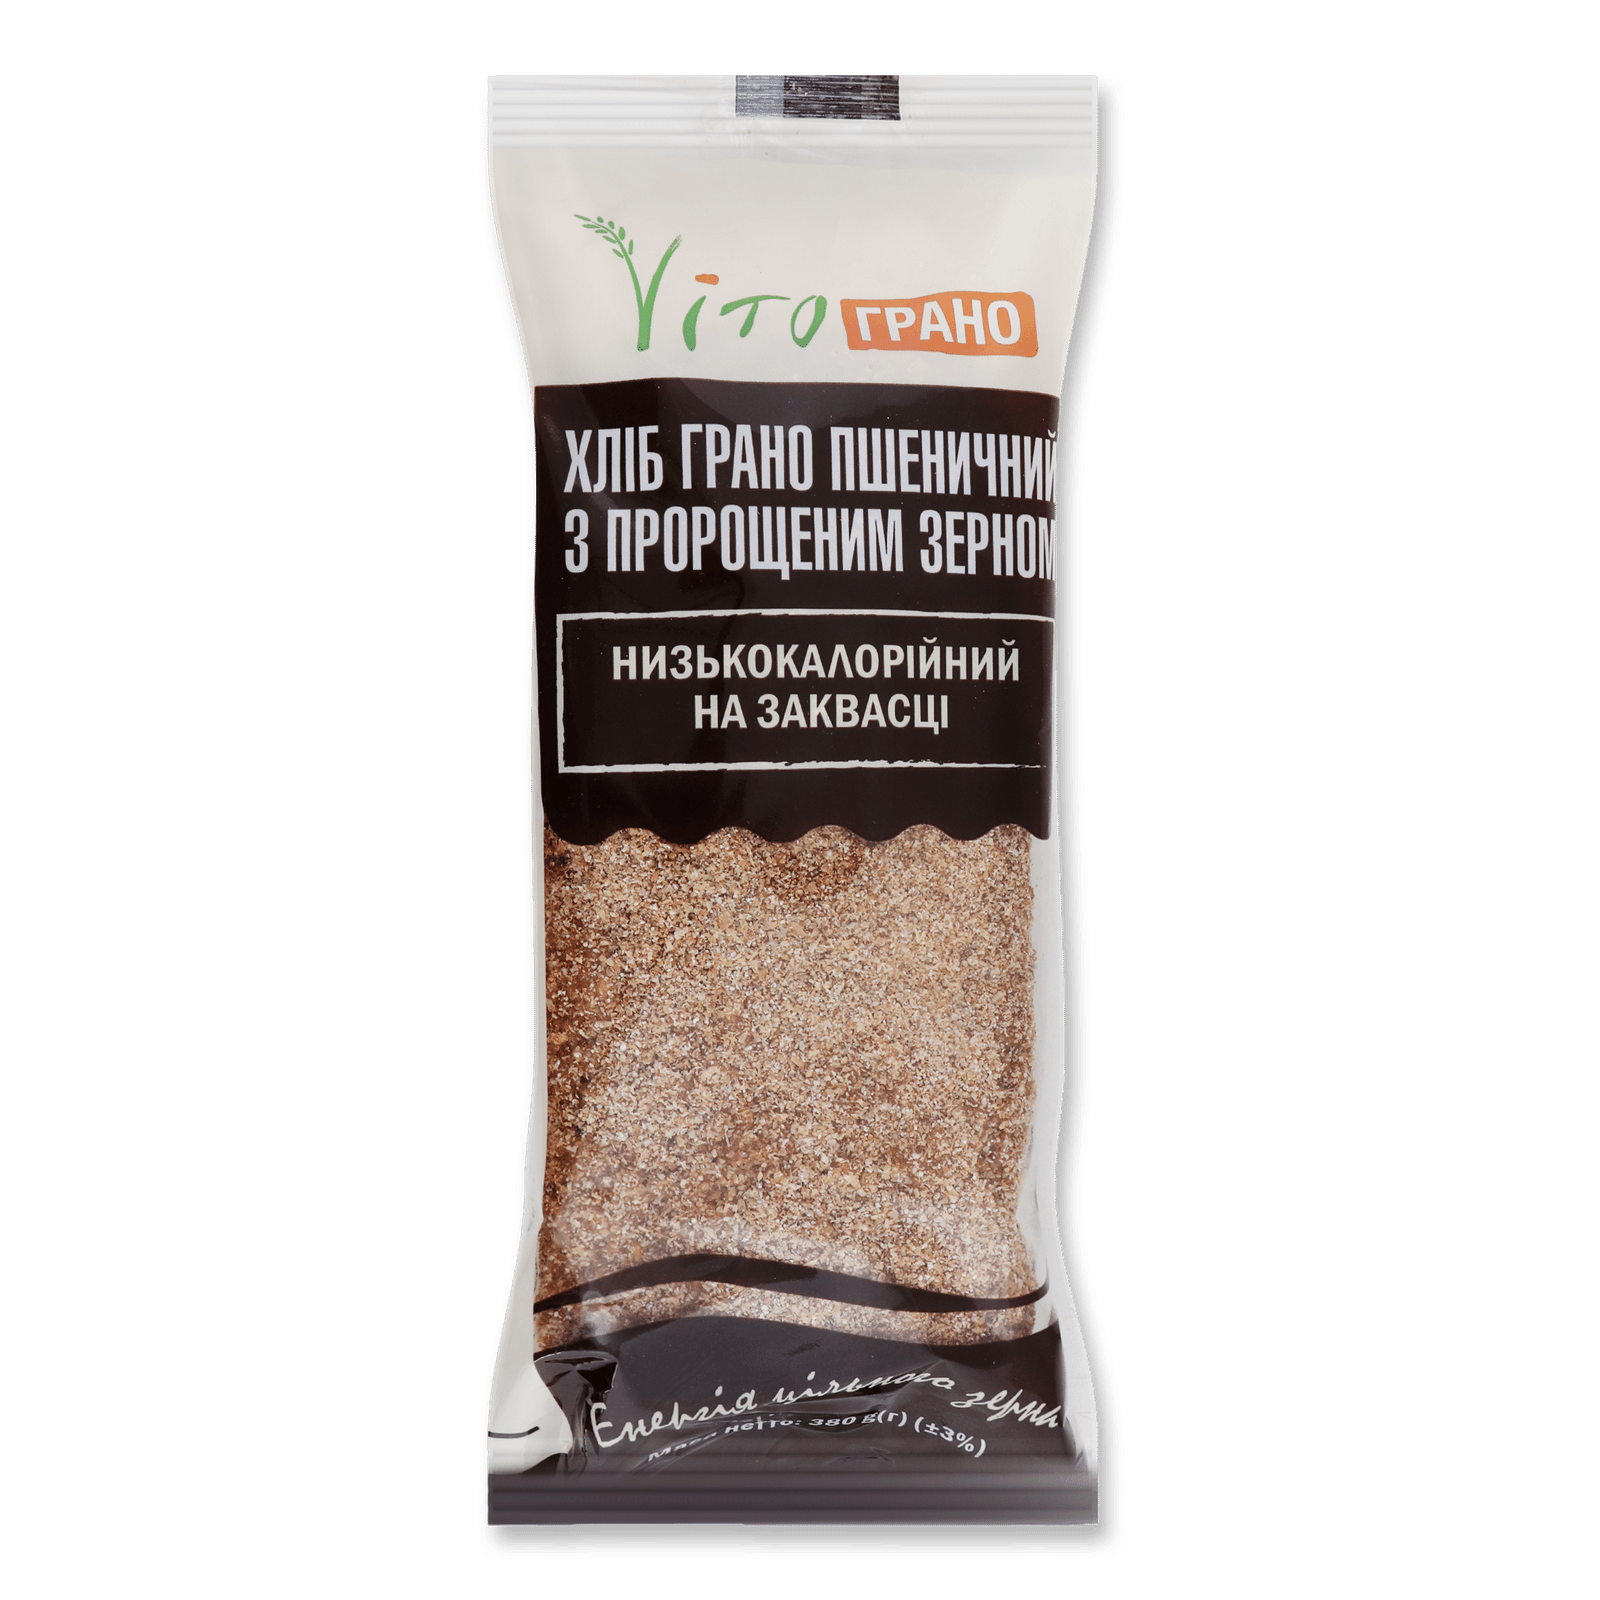 Хліб Vito «Грано» пшеничний з пророщеним зерном - 1